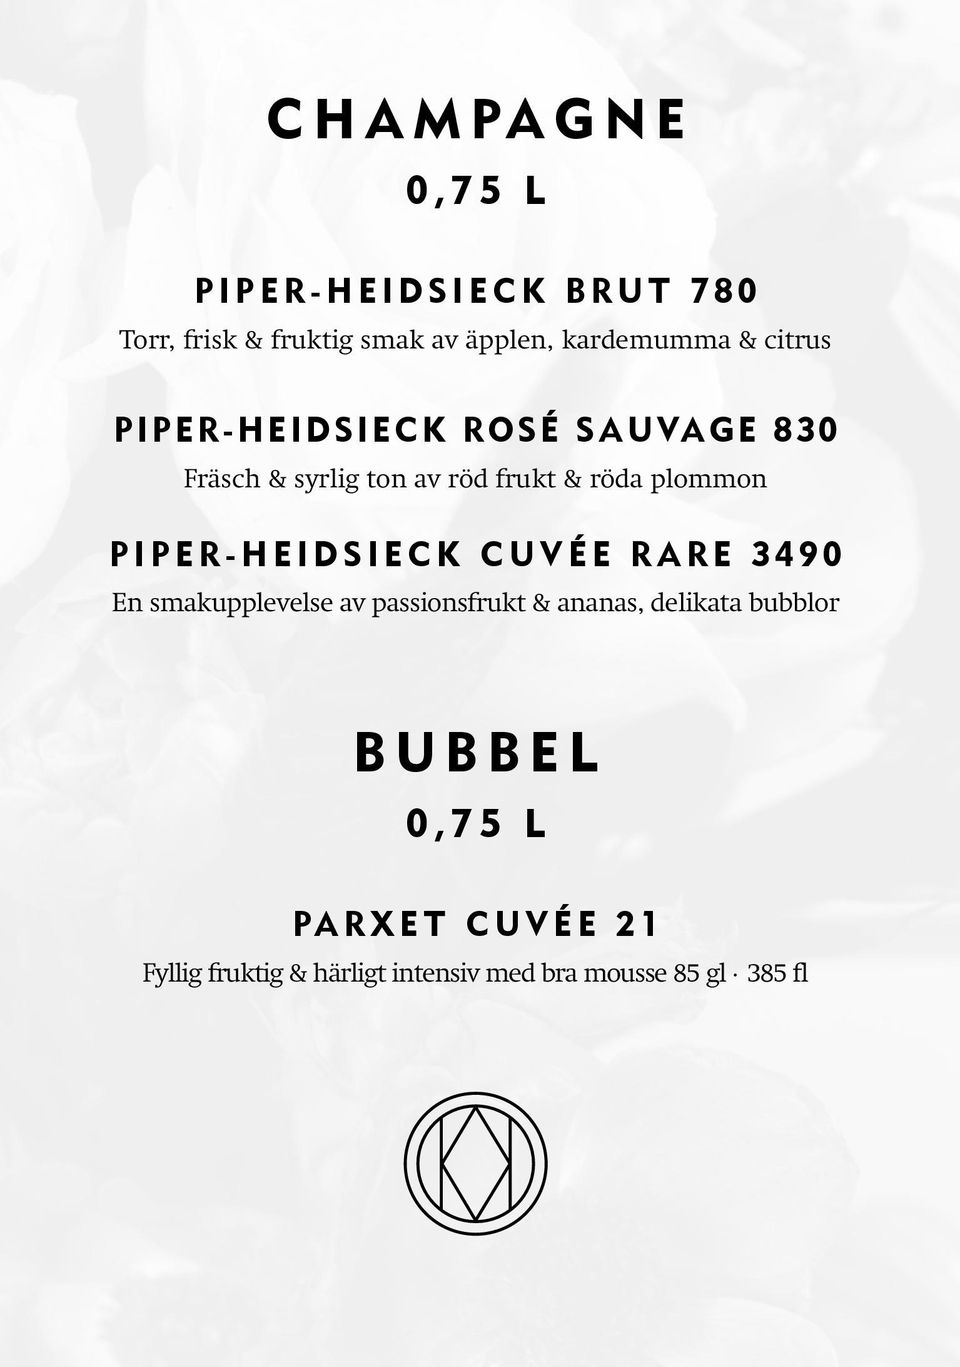 Piper-Heidsieck Cuvée Rare 3490 En smakupplevelse av passionsfrukt & ananas, delikata